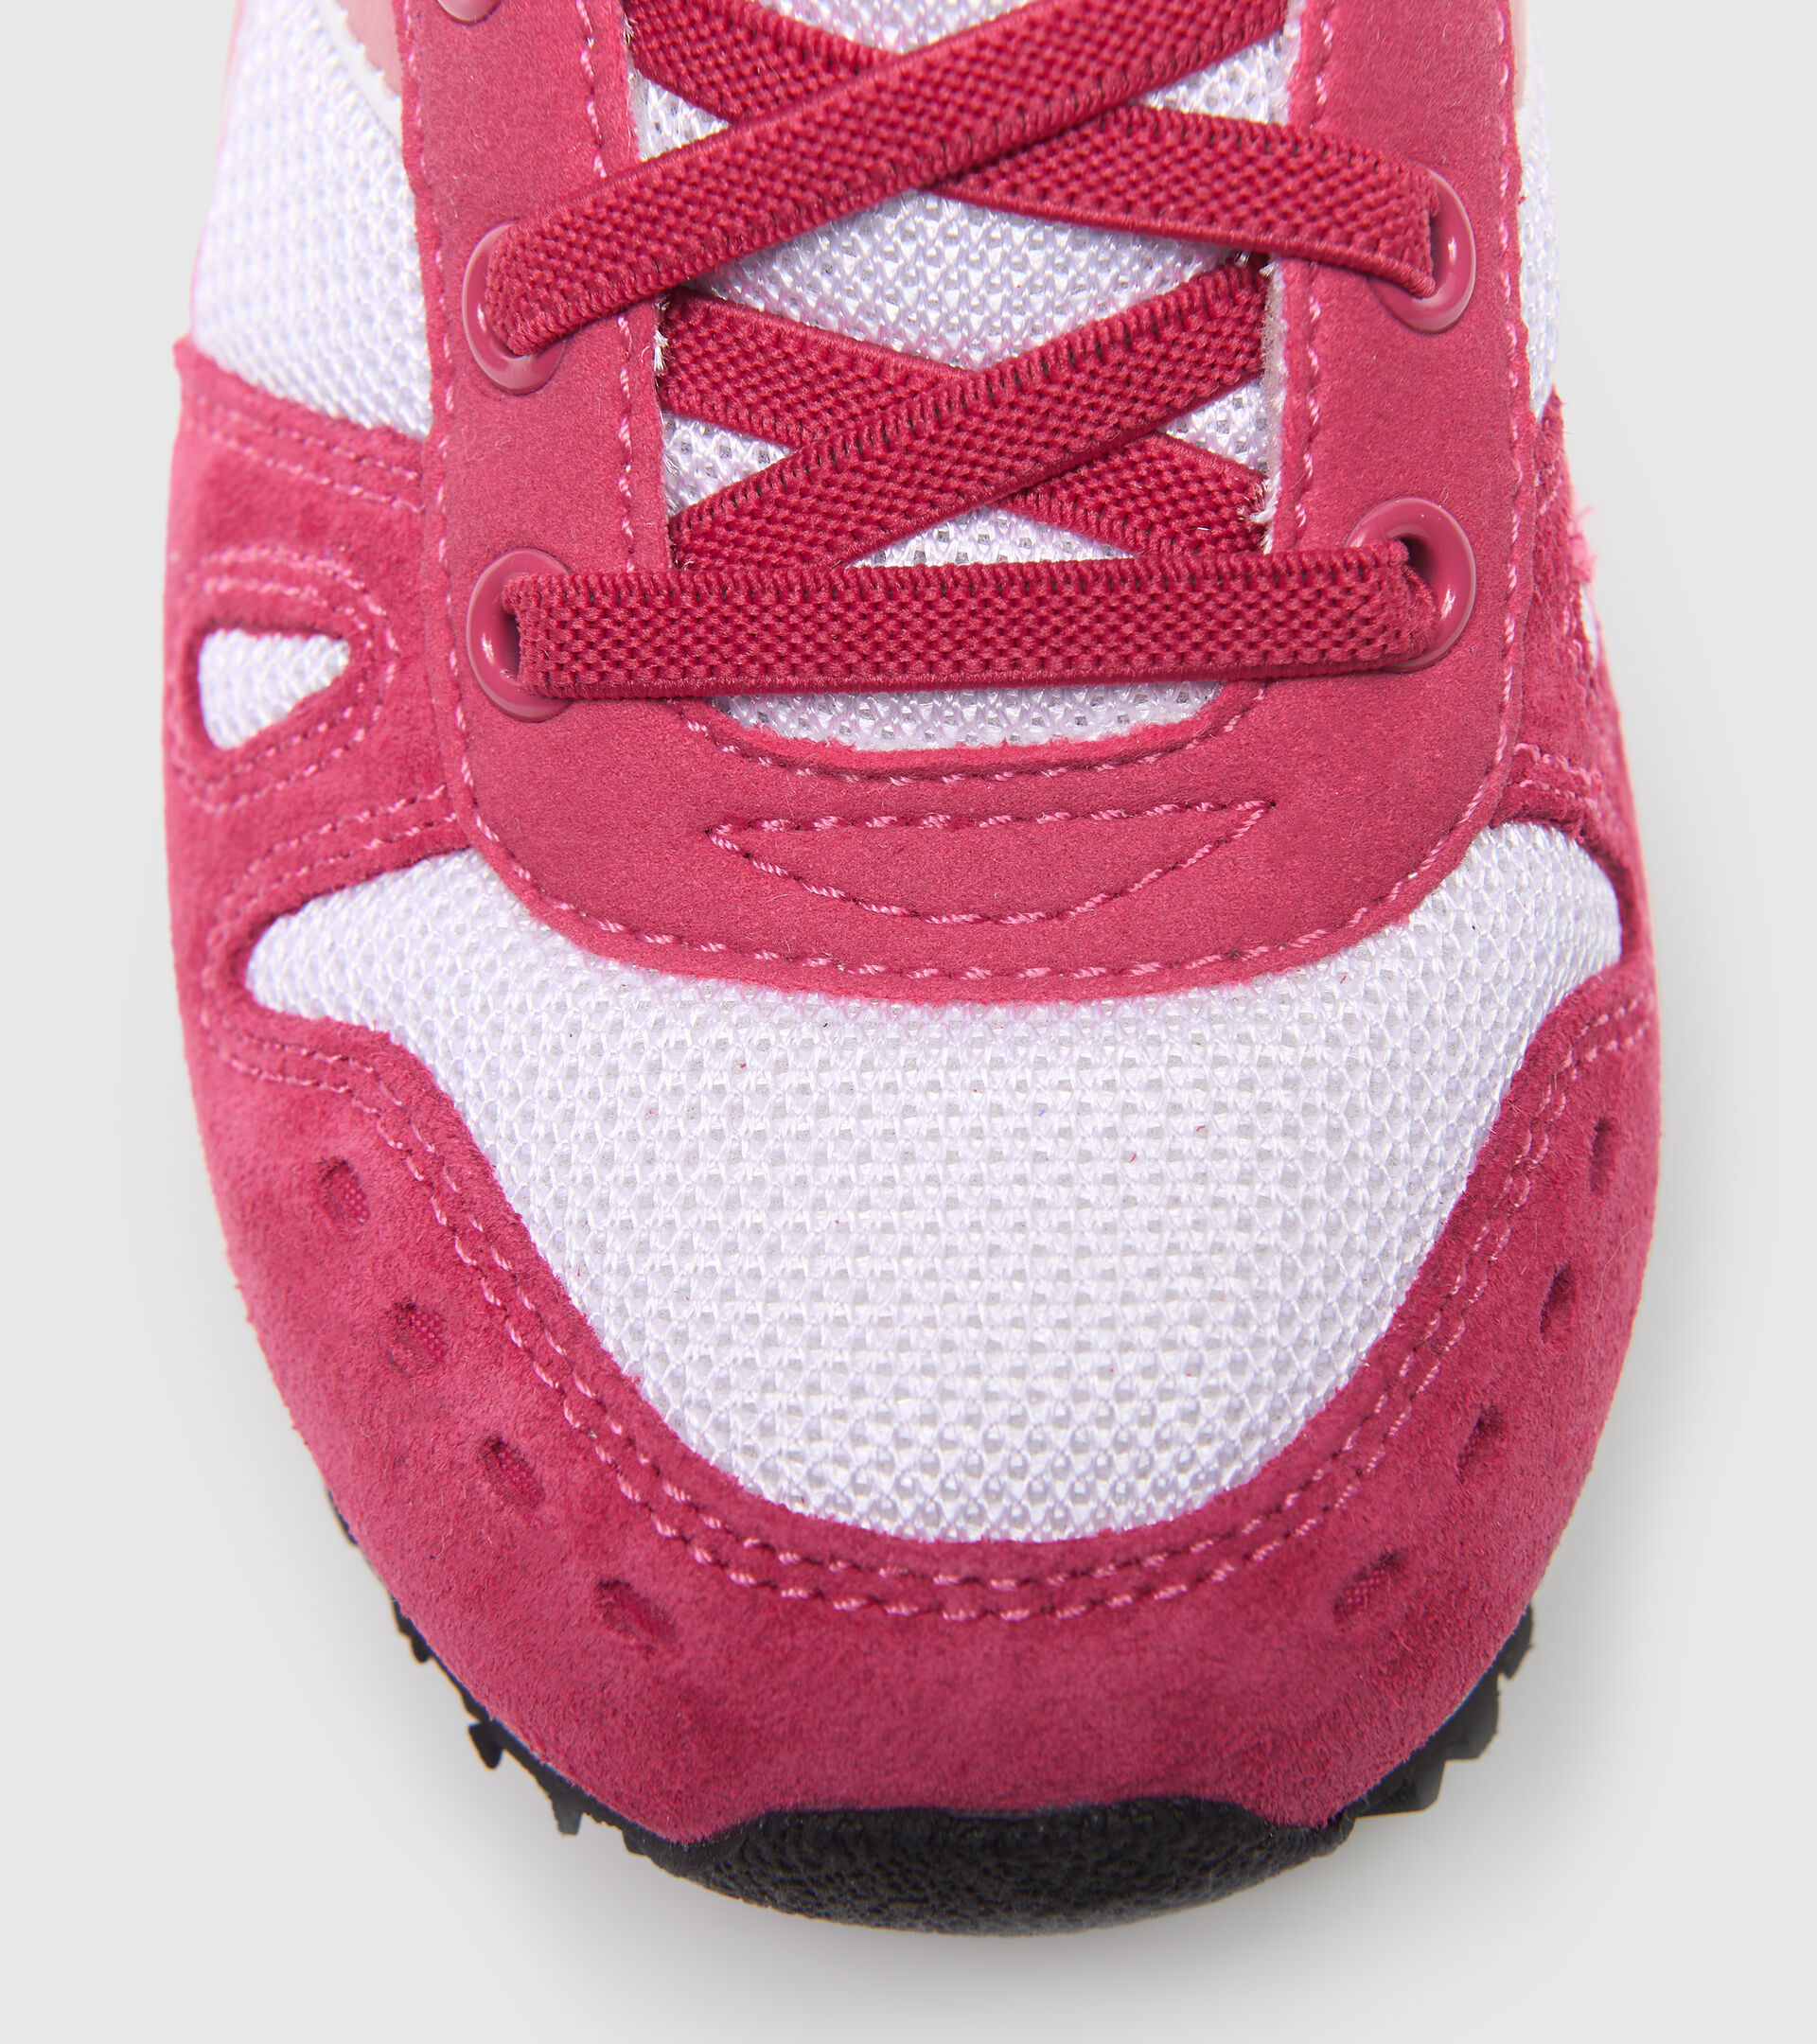 Chaussures de sport - Enfants 4-8 ans SIMPLE RUN PS FRAMBOISE SORBET/ABRICOT AU BR - Diadora